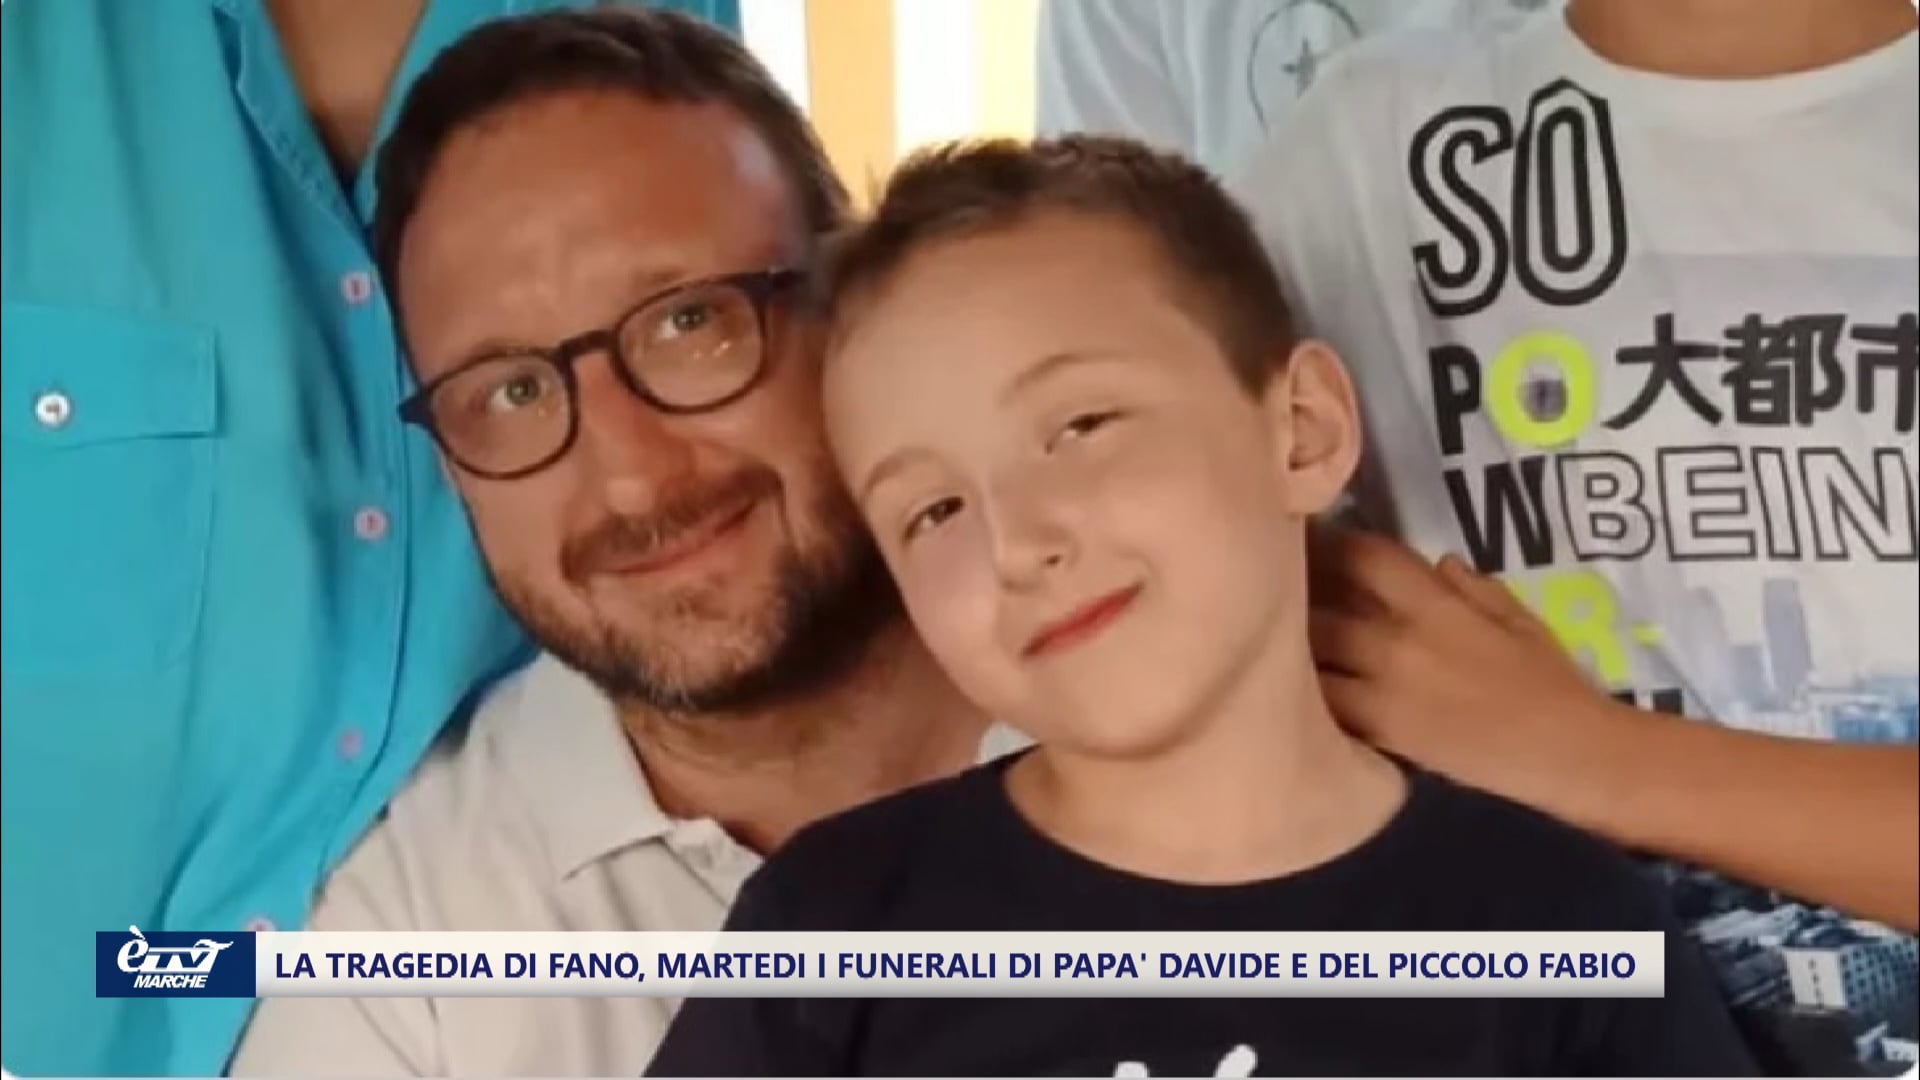 La tragedia di Fano, martedì lutto cittadino per i funerali di papà Davide e del piccolo Fabio - VIDEO 